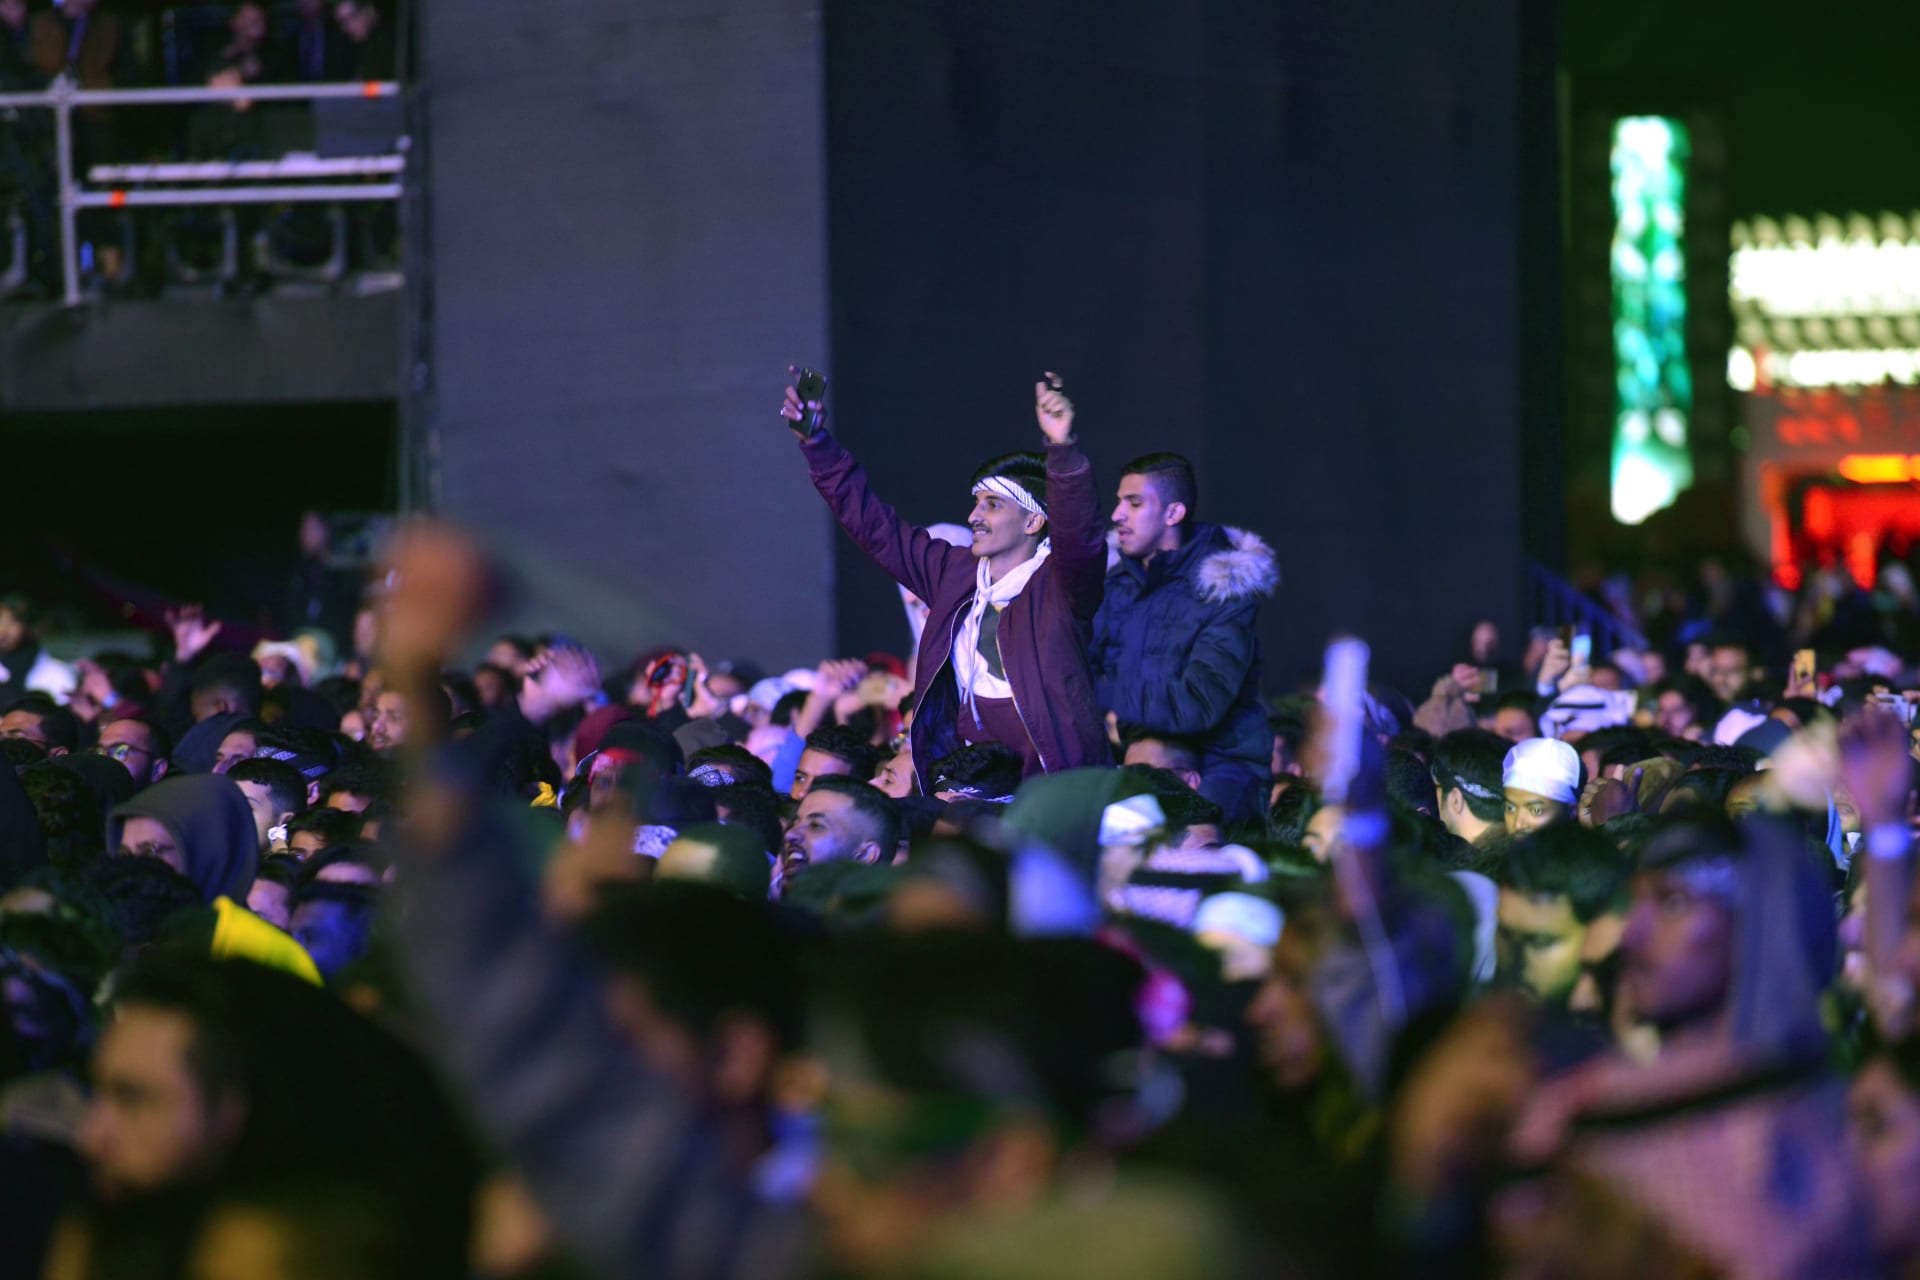 السعودية تعتزم تدشين مشروع "الموسيقى للجميع".. وجهاد الخالدي توضح أهدافه